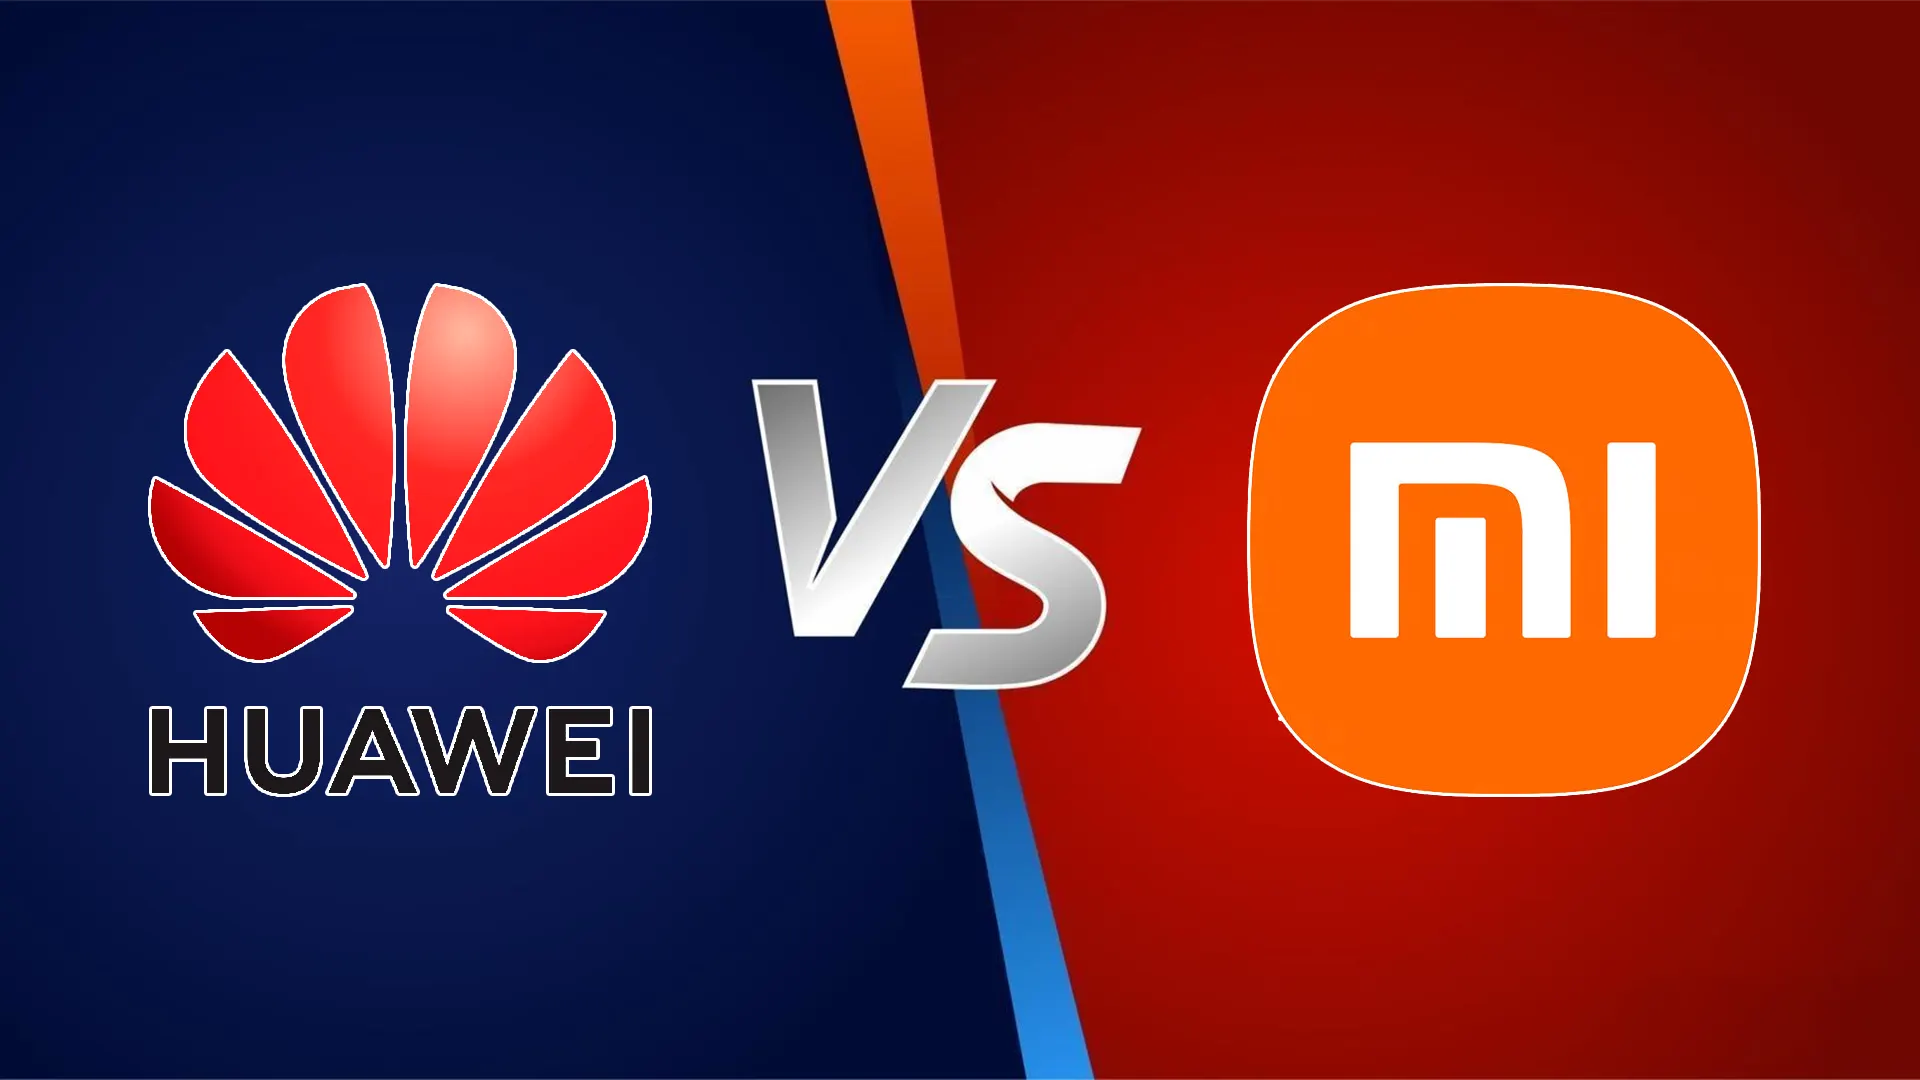 Брат на брата: Xiaomi столкнулась с неприятностями из-за незаконного использования патентов Huawei